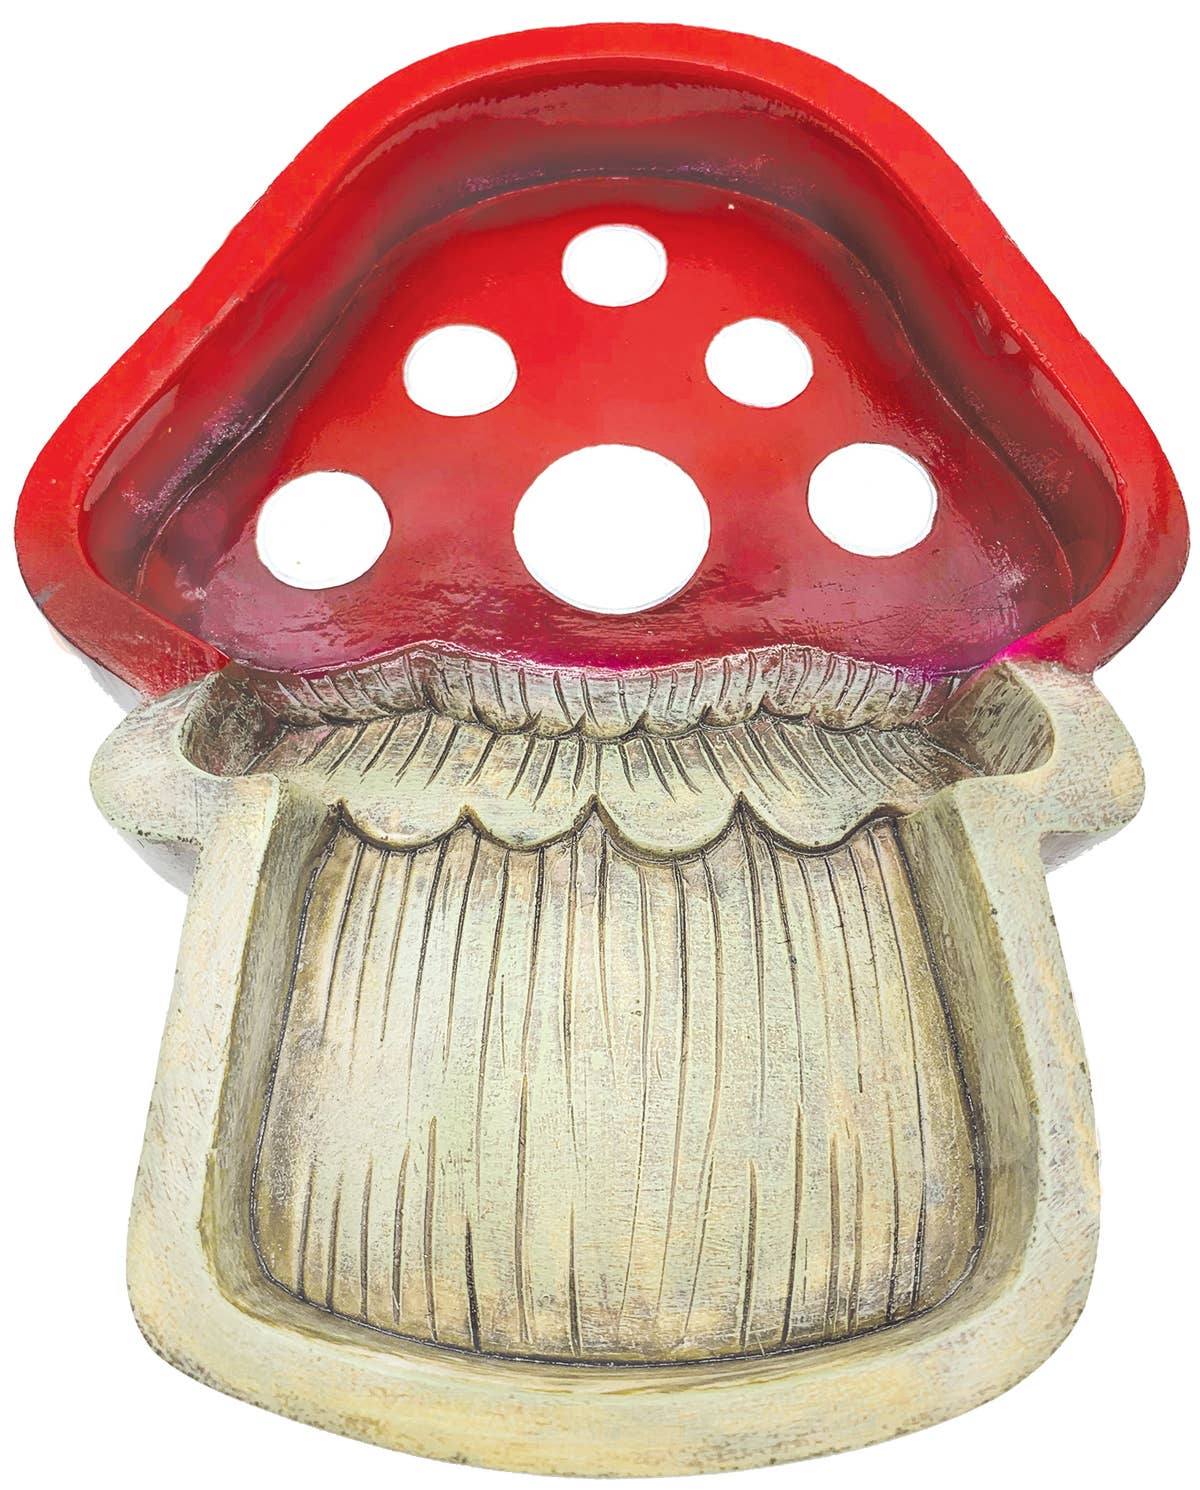 Mushroom Trinket Dish - Hidden Gems Novelty